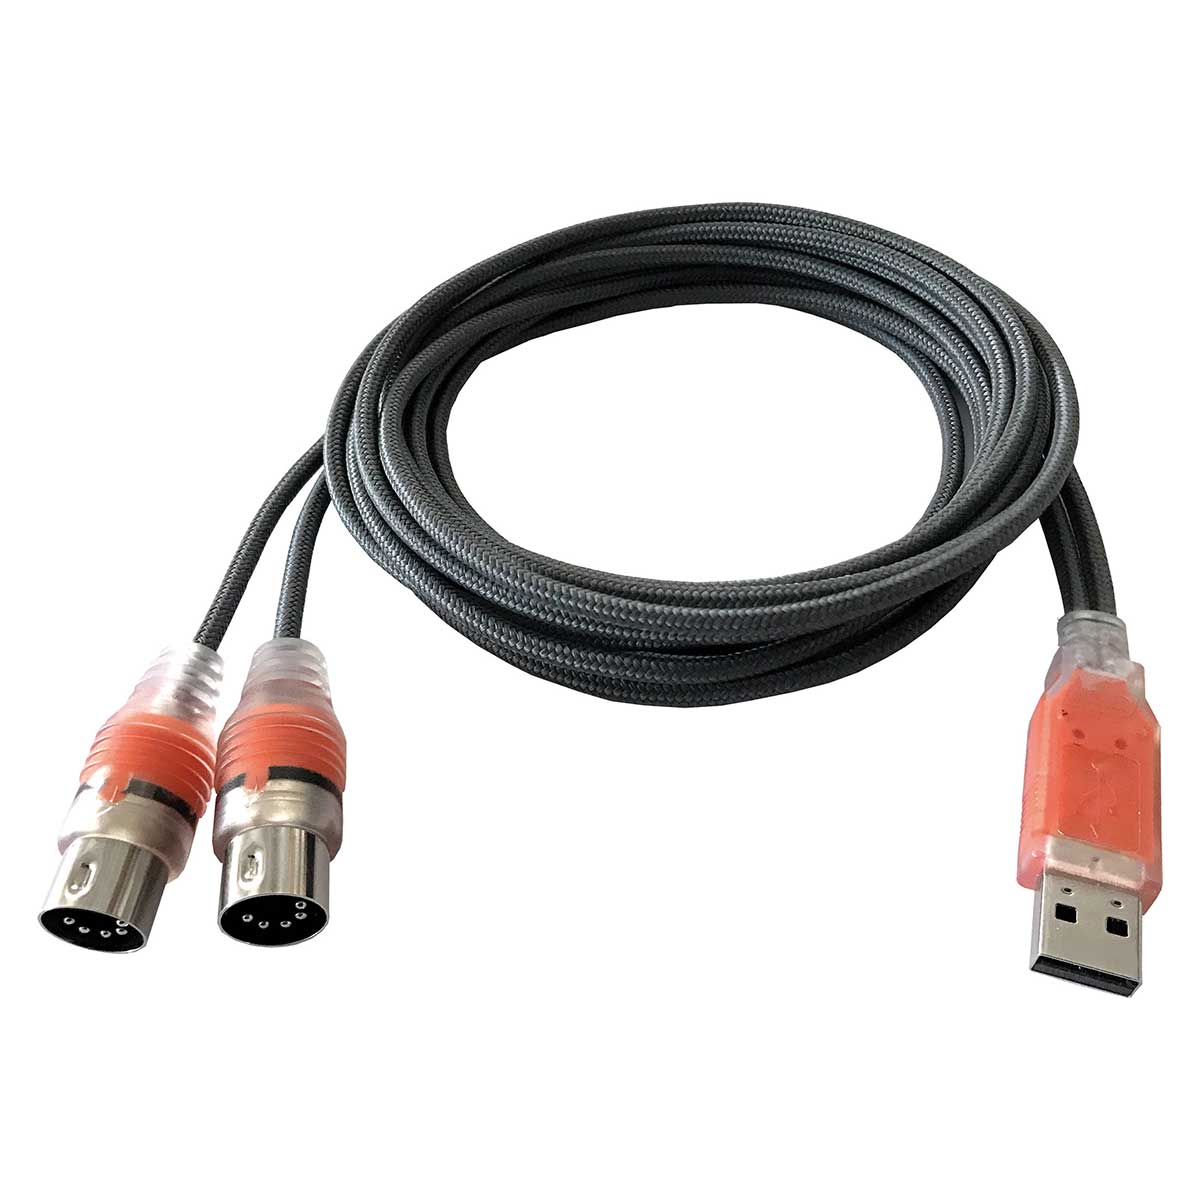 ESI Midimate EX USB 2.0 MIDI Interface Cable with 2 I/O ports